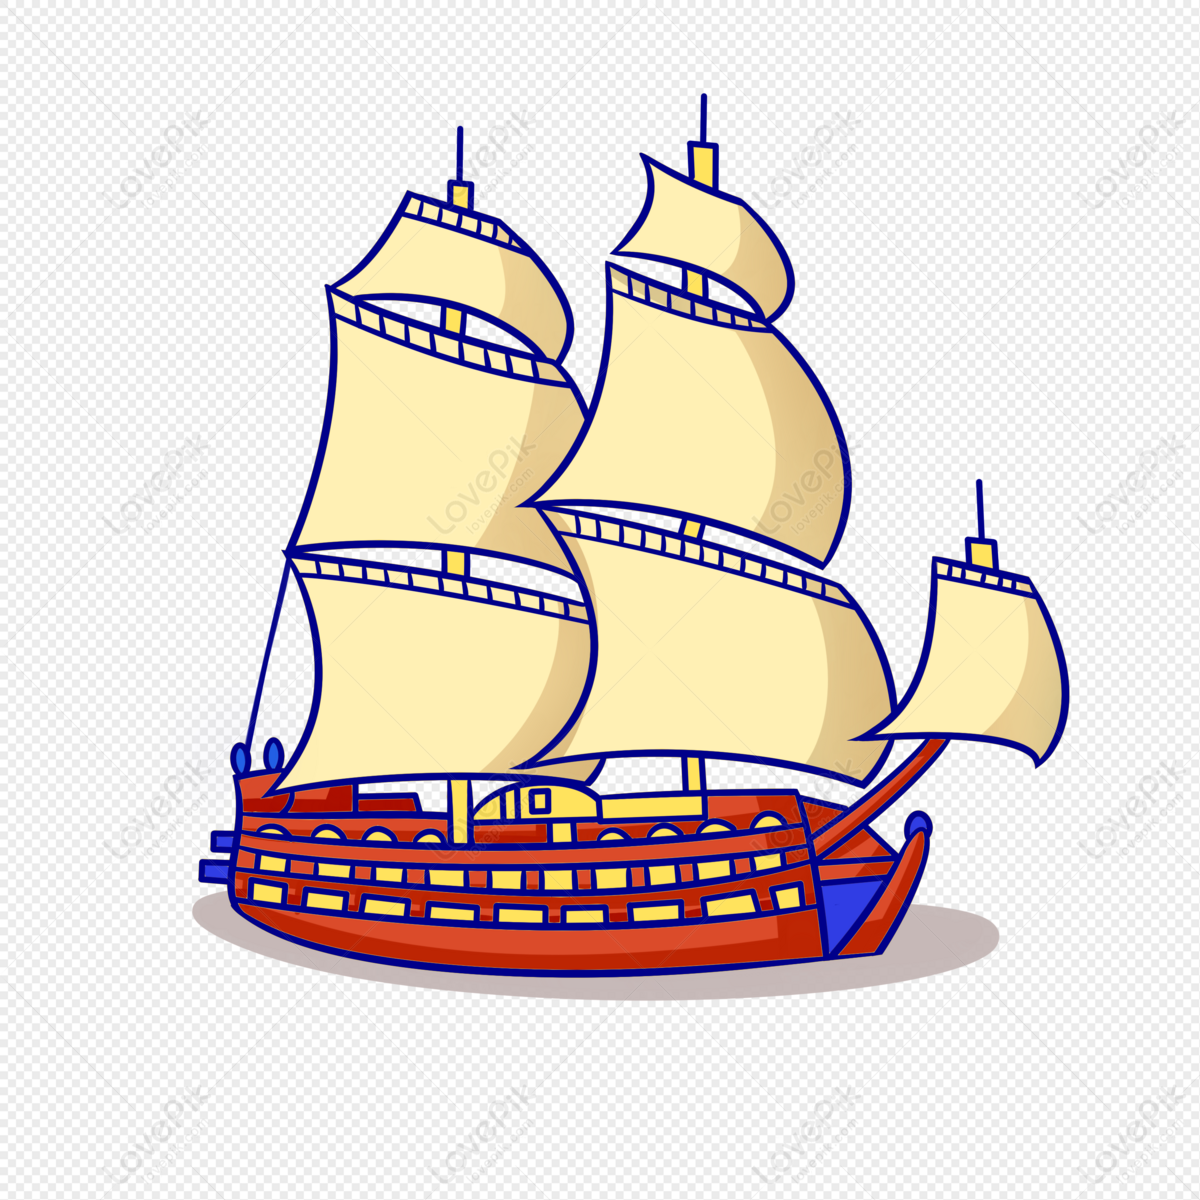 sailboat, boat clipart, boat sea, boat sailing png hd transparent image